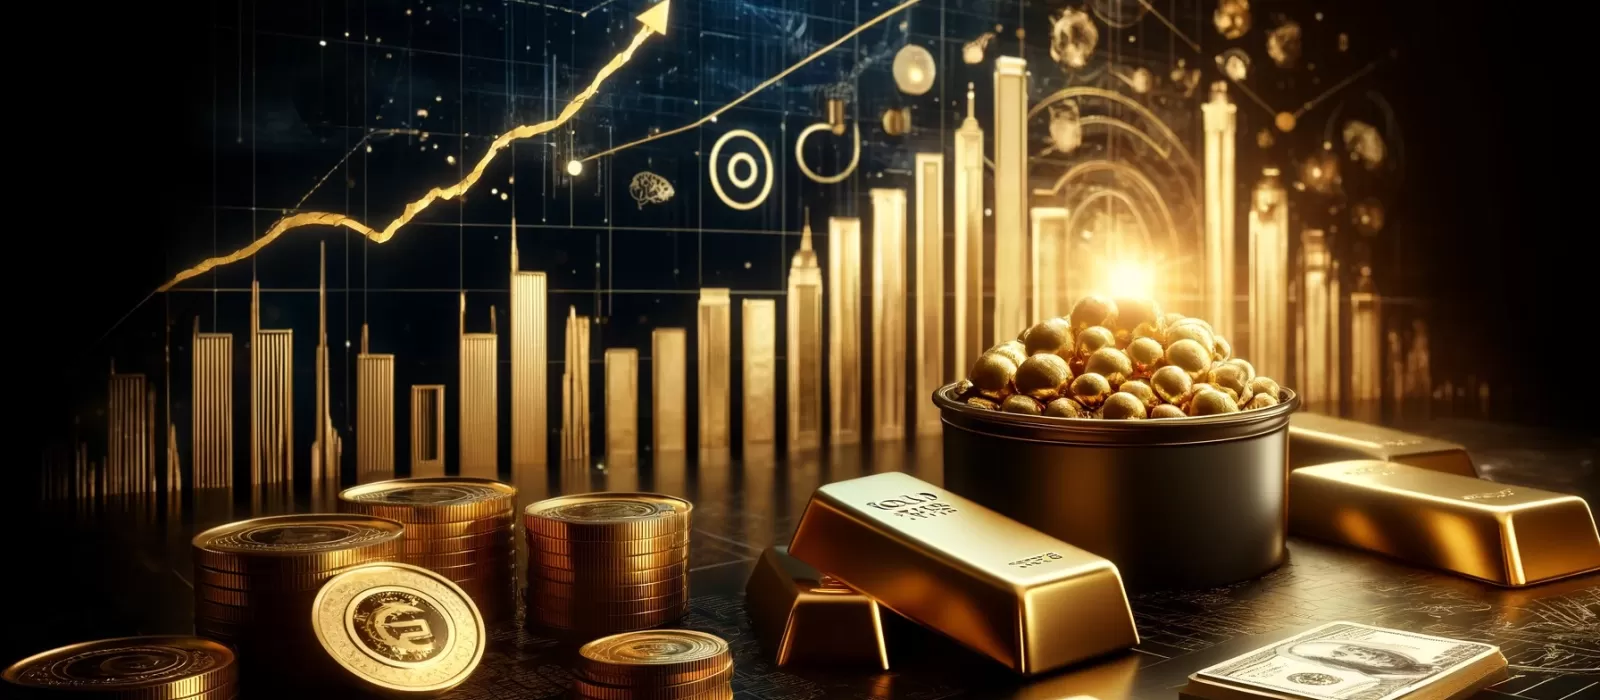 سعر الذهب يحلق إلى مستويات قياسية جديدة